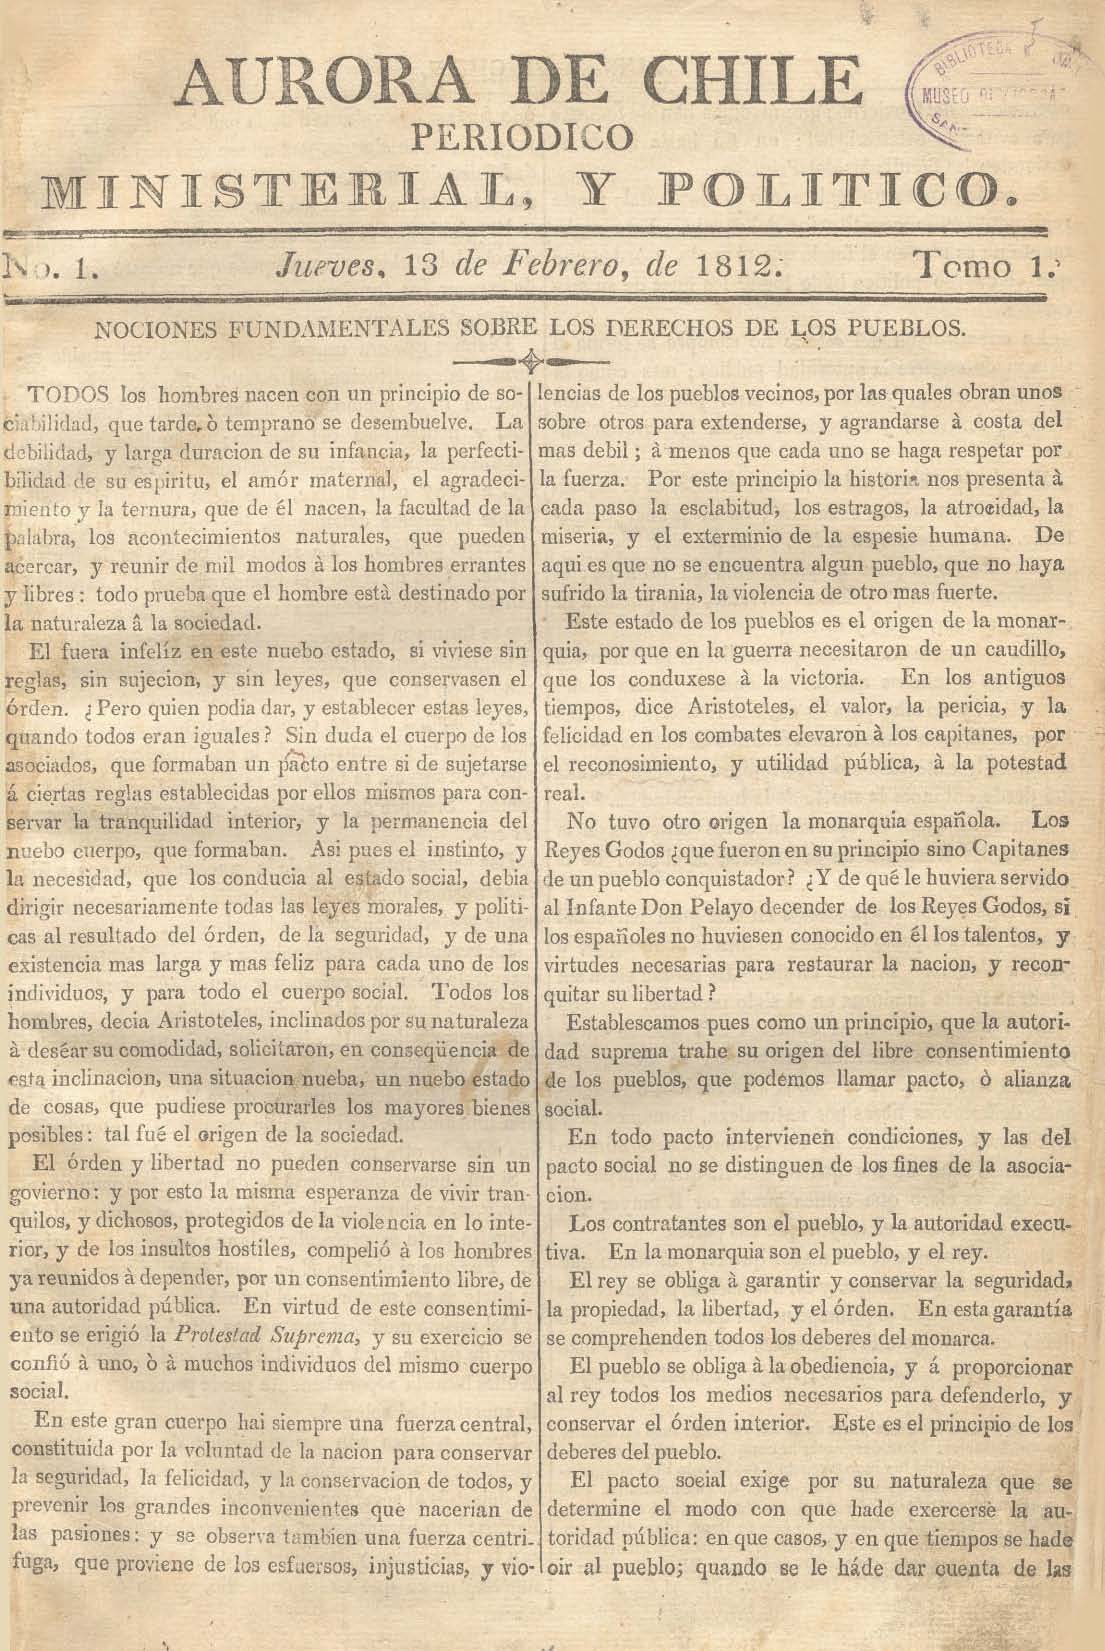 							Ver Núm. 6 (1813): Tomo II. Jueves 11 de Febrero
						